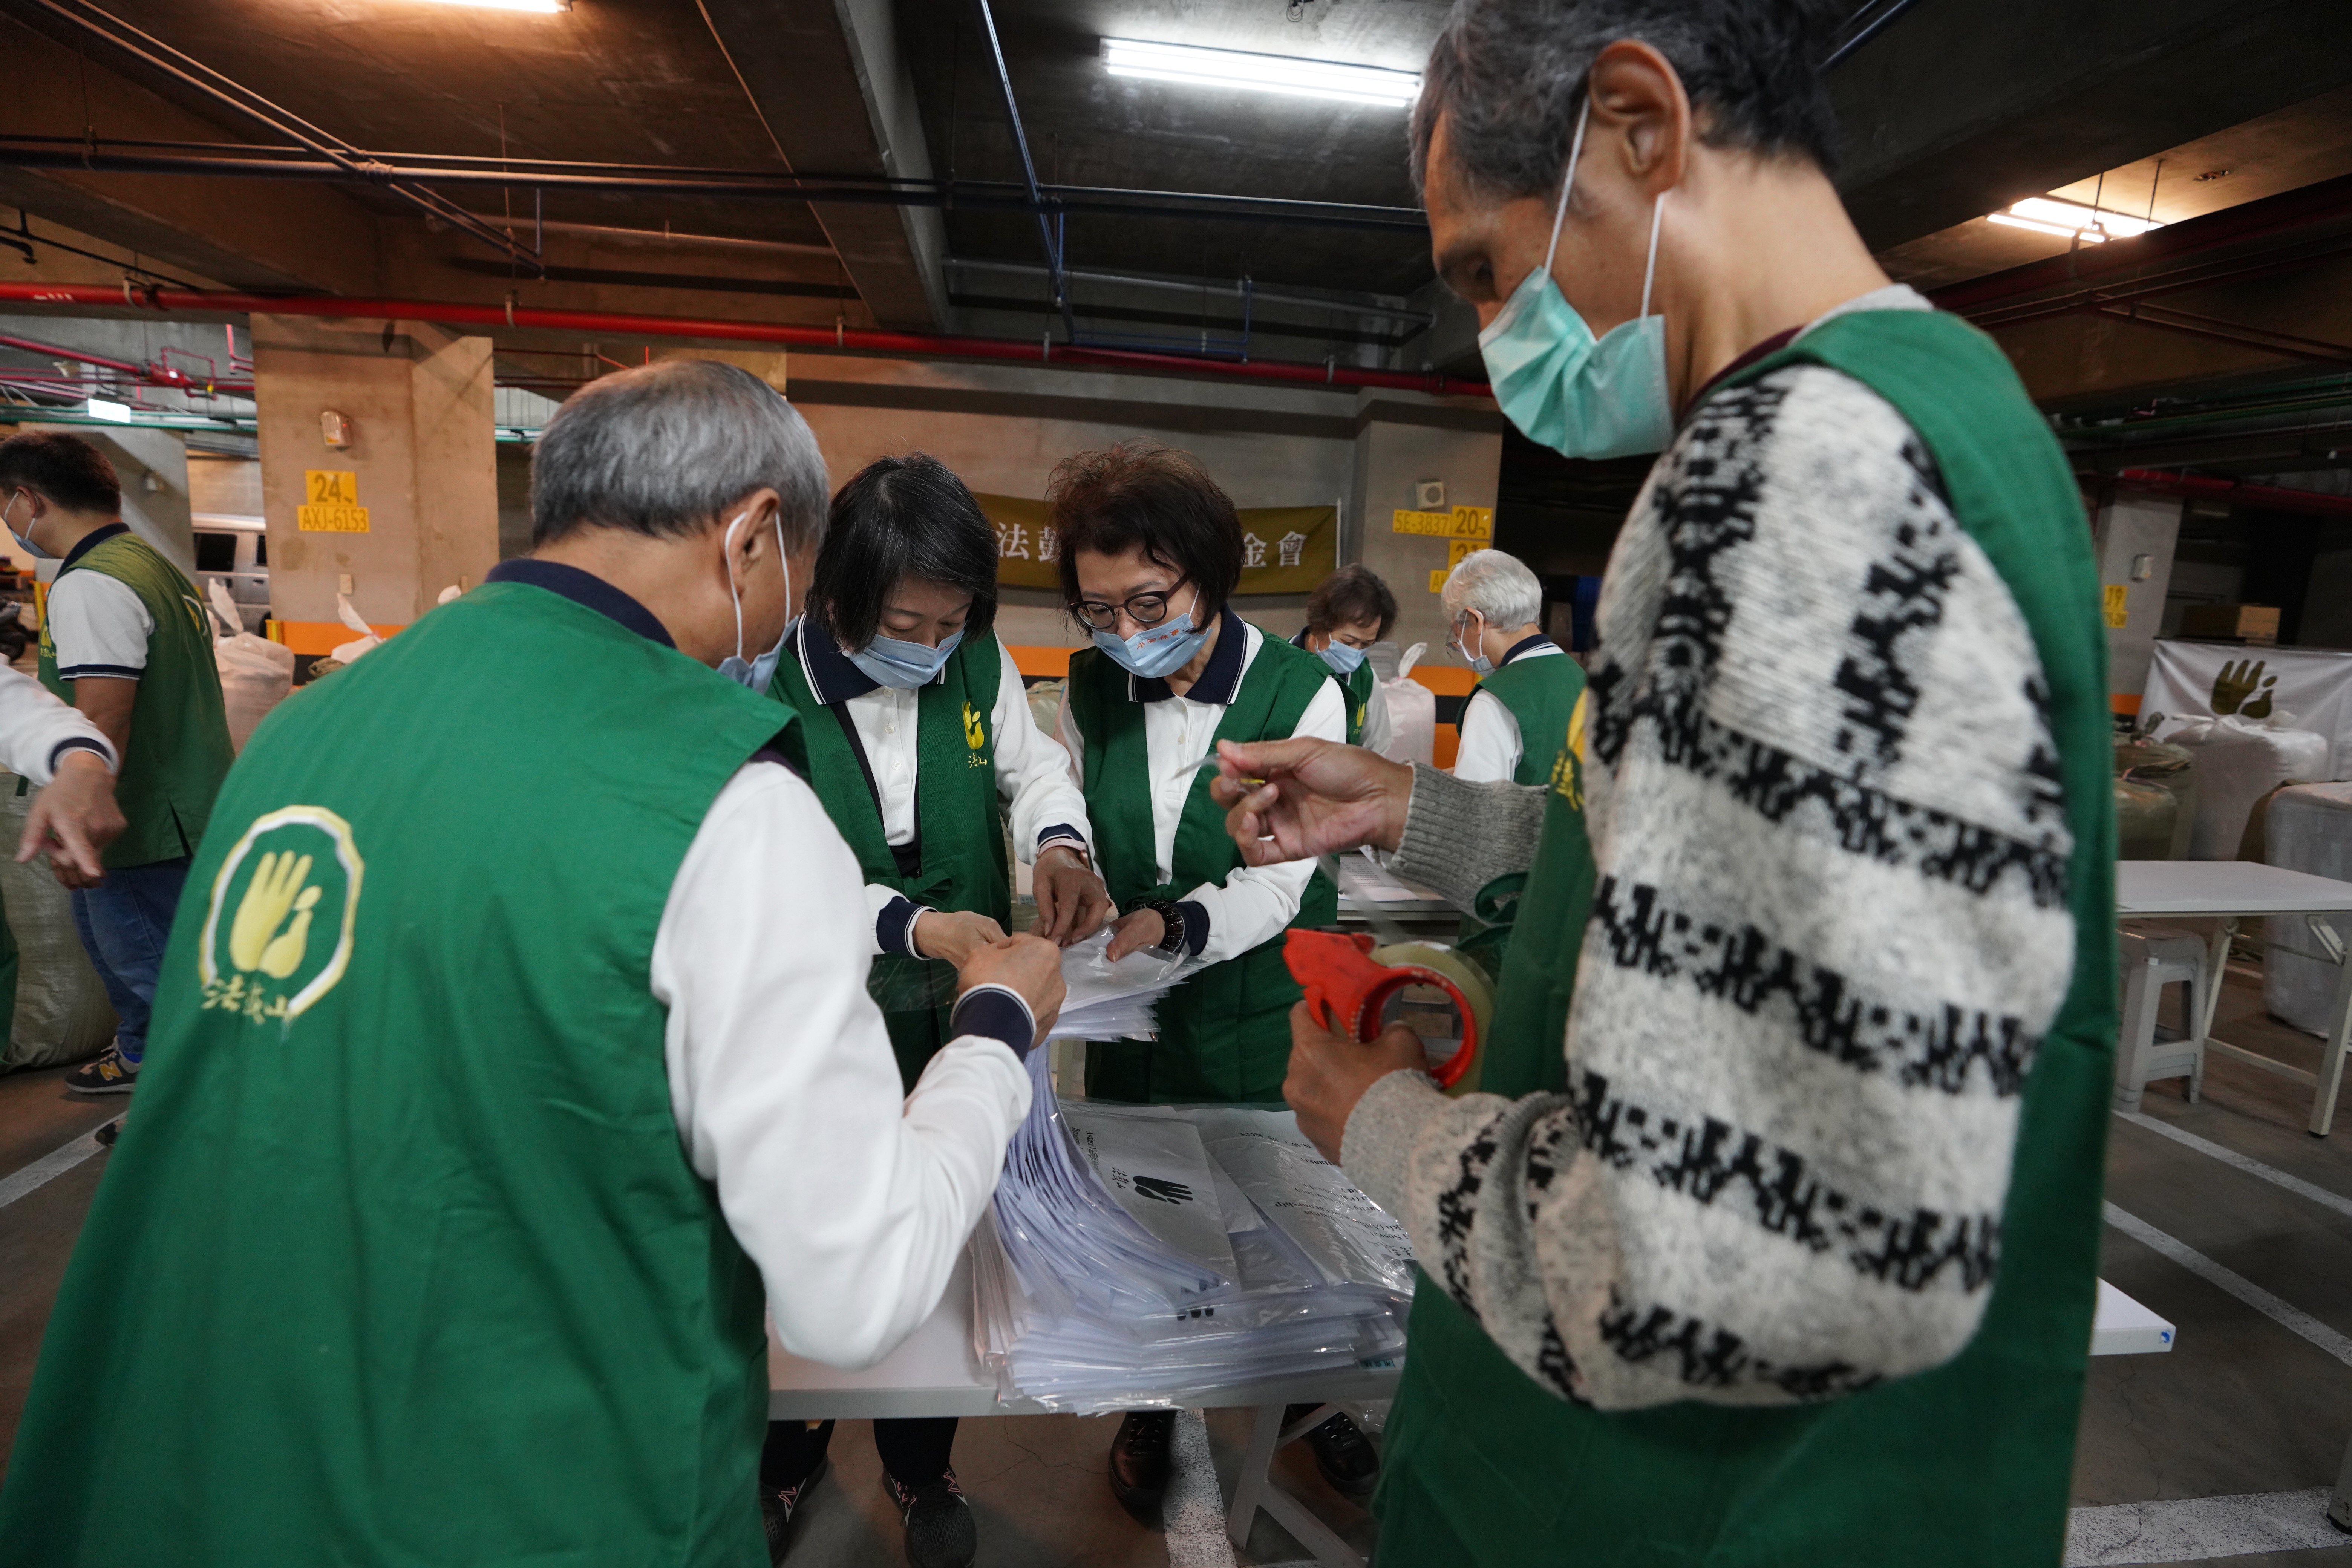 柯瑤碧會長、陳照興、王瓊珠副會長也捲起衣袖幫忙打包裝箱。